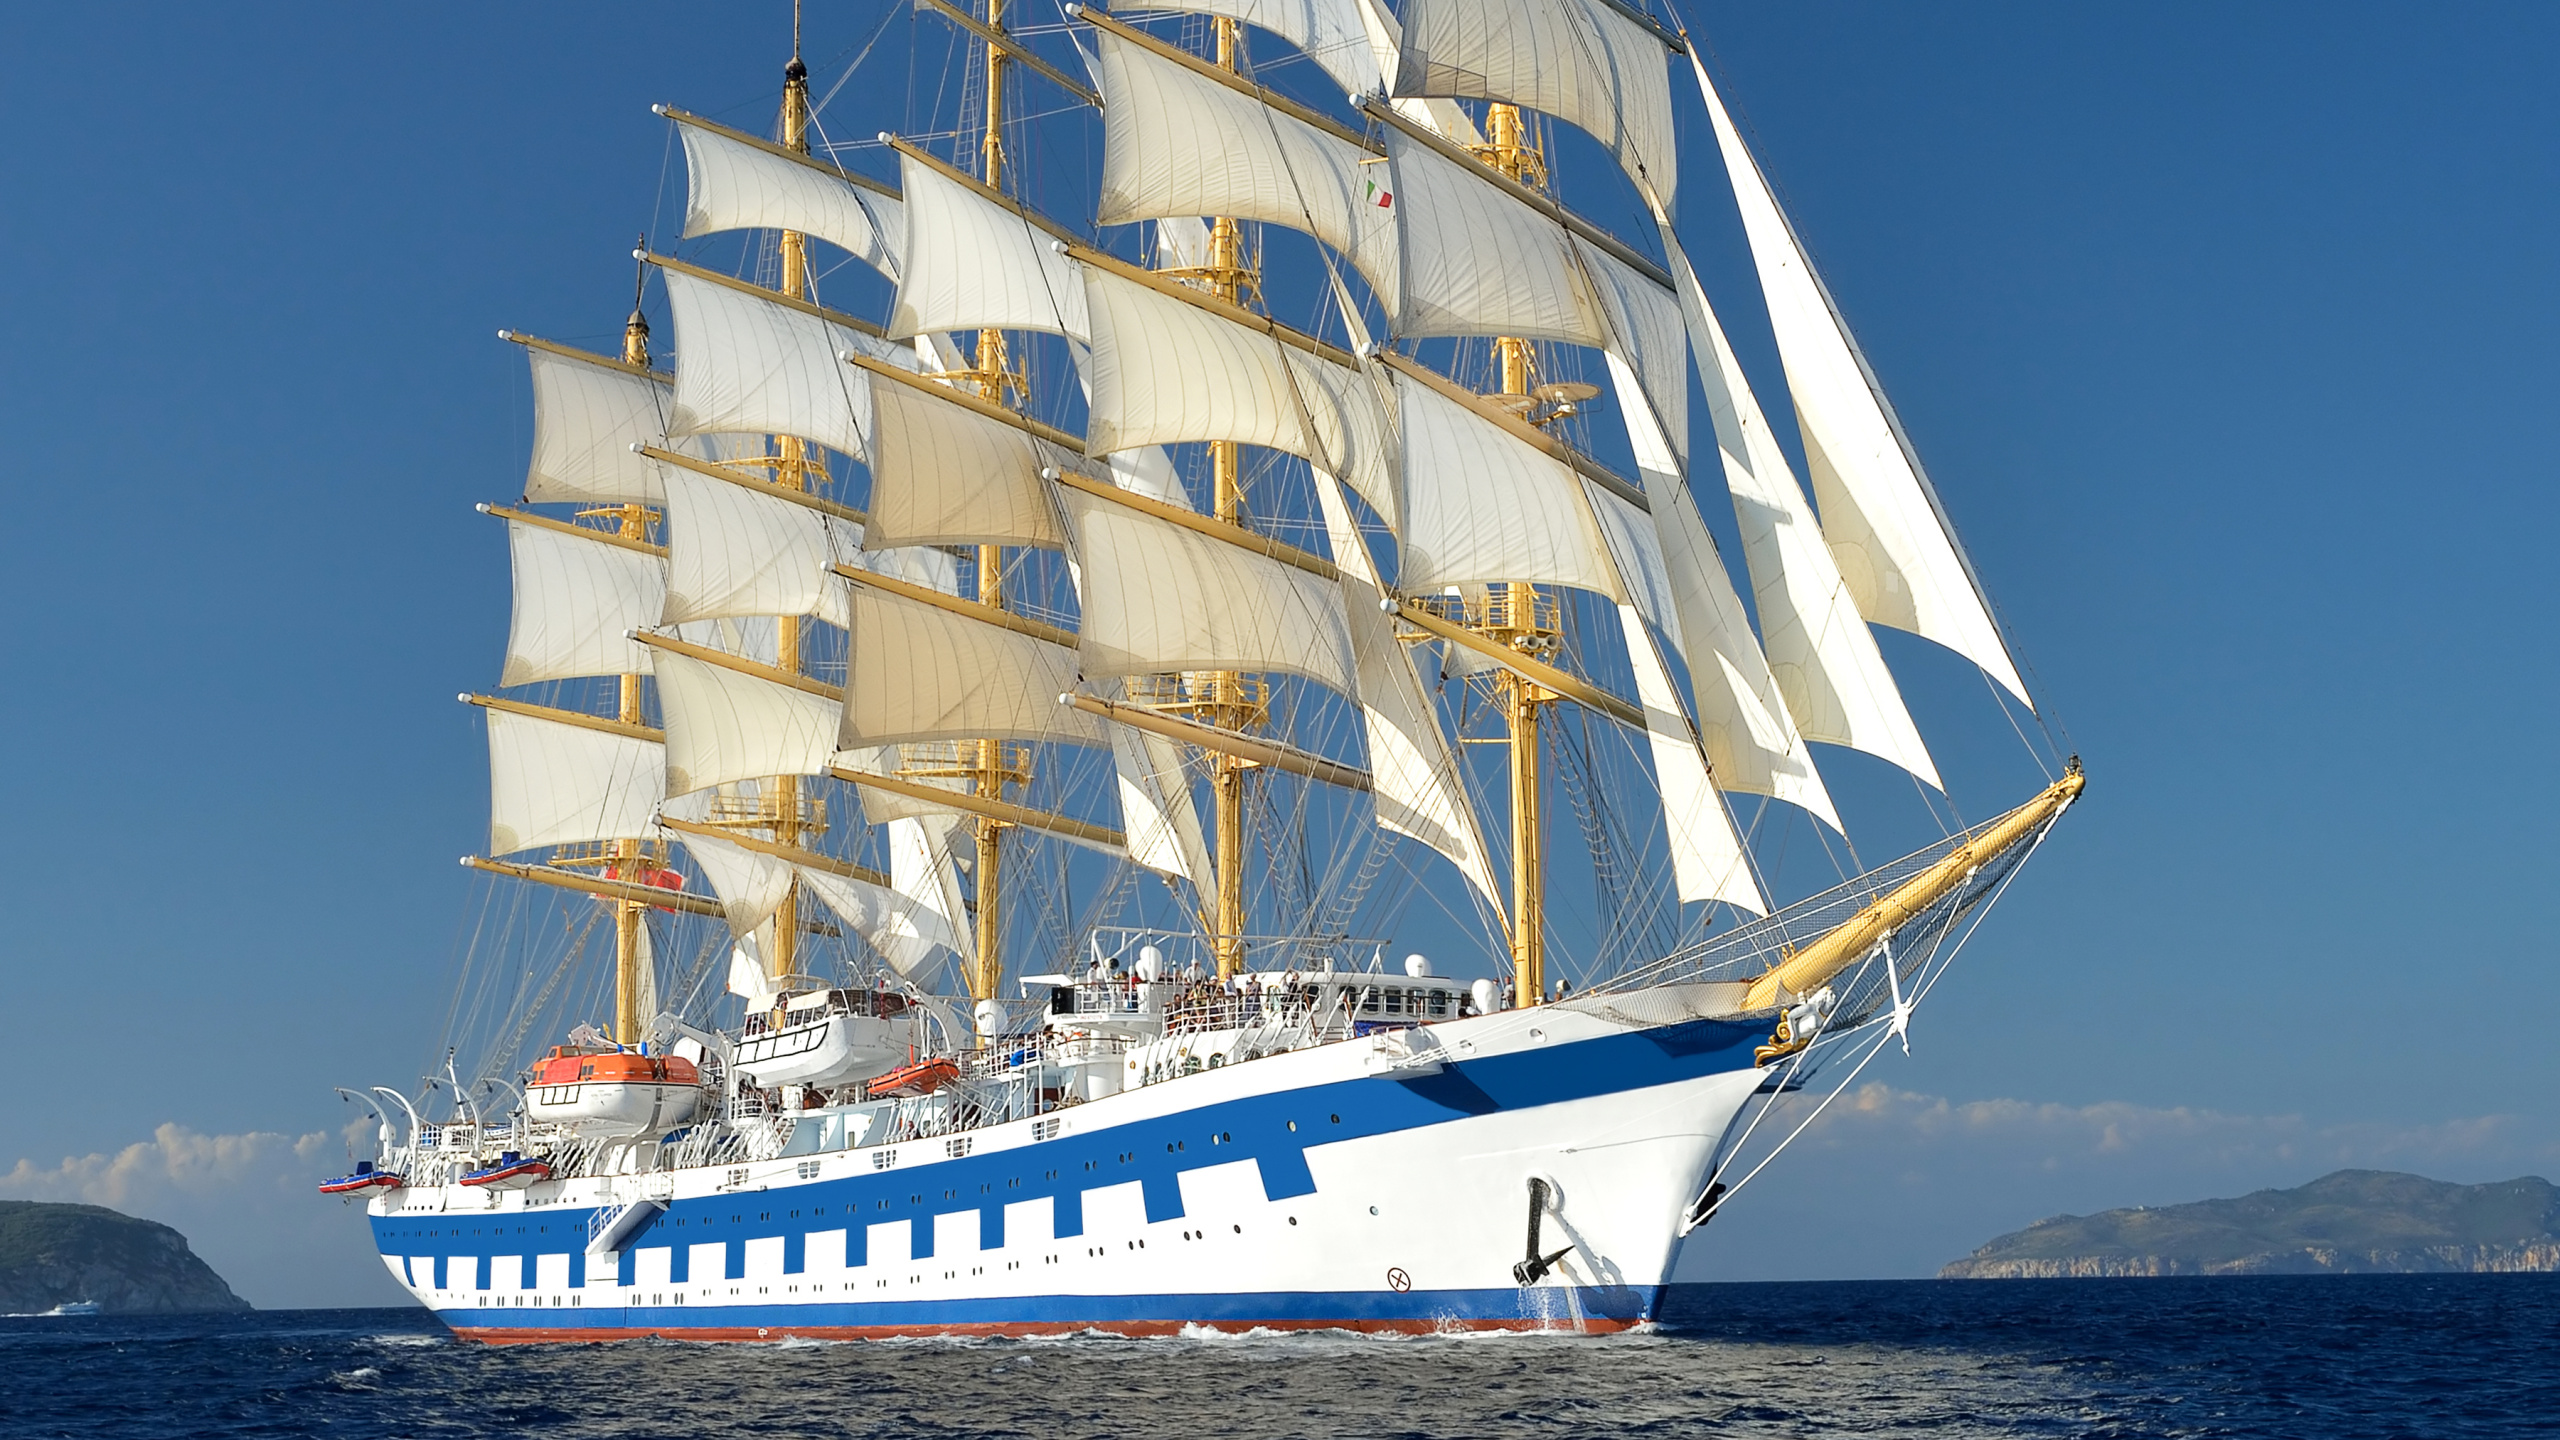 游船, 水运, 高船, Barquentine, 帆船 壁纸 2560x1440 允许